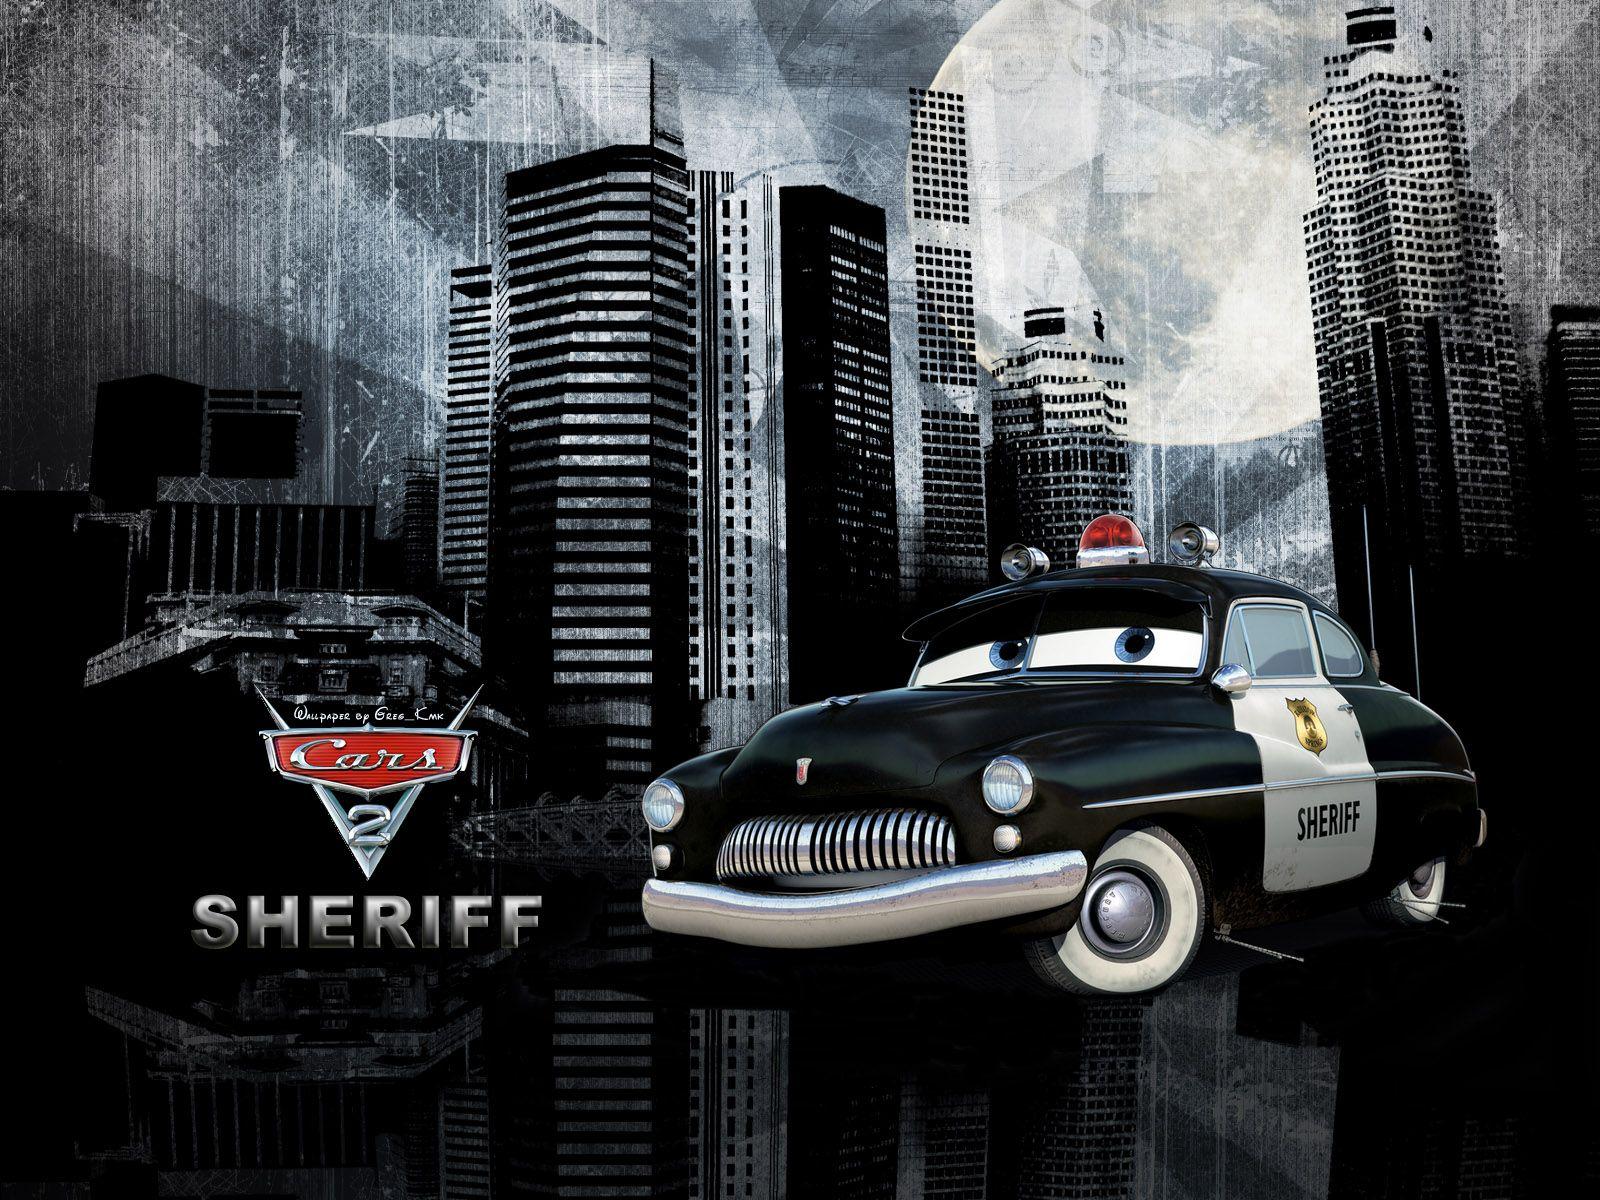 Sheriff Wallpaper on KuBiPeT.com